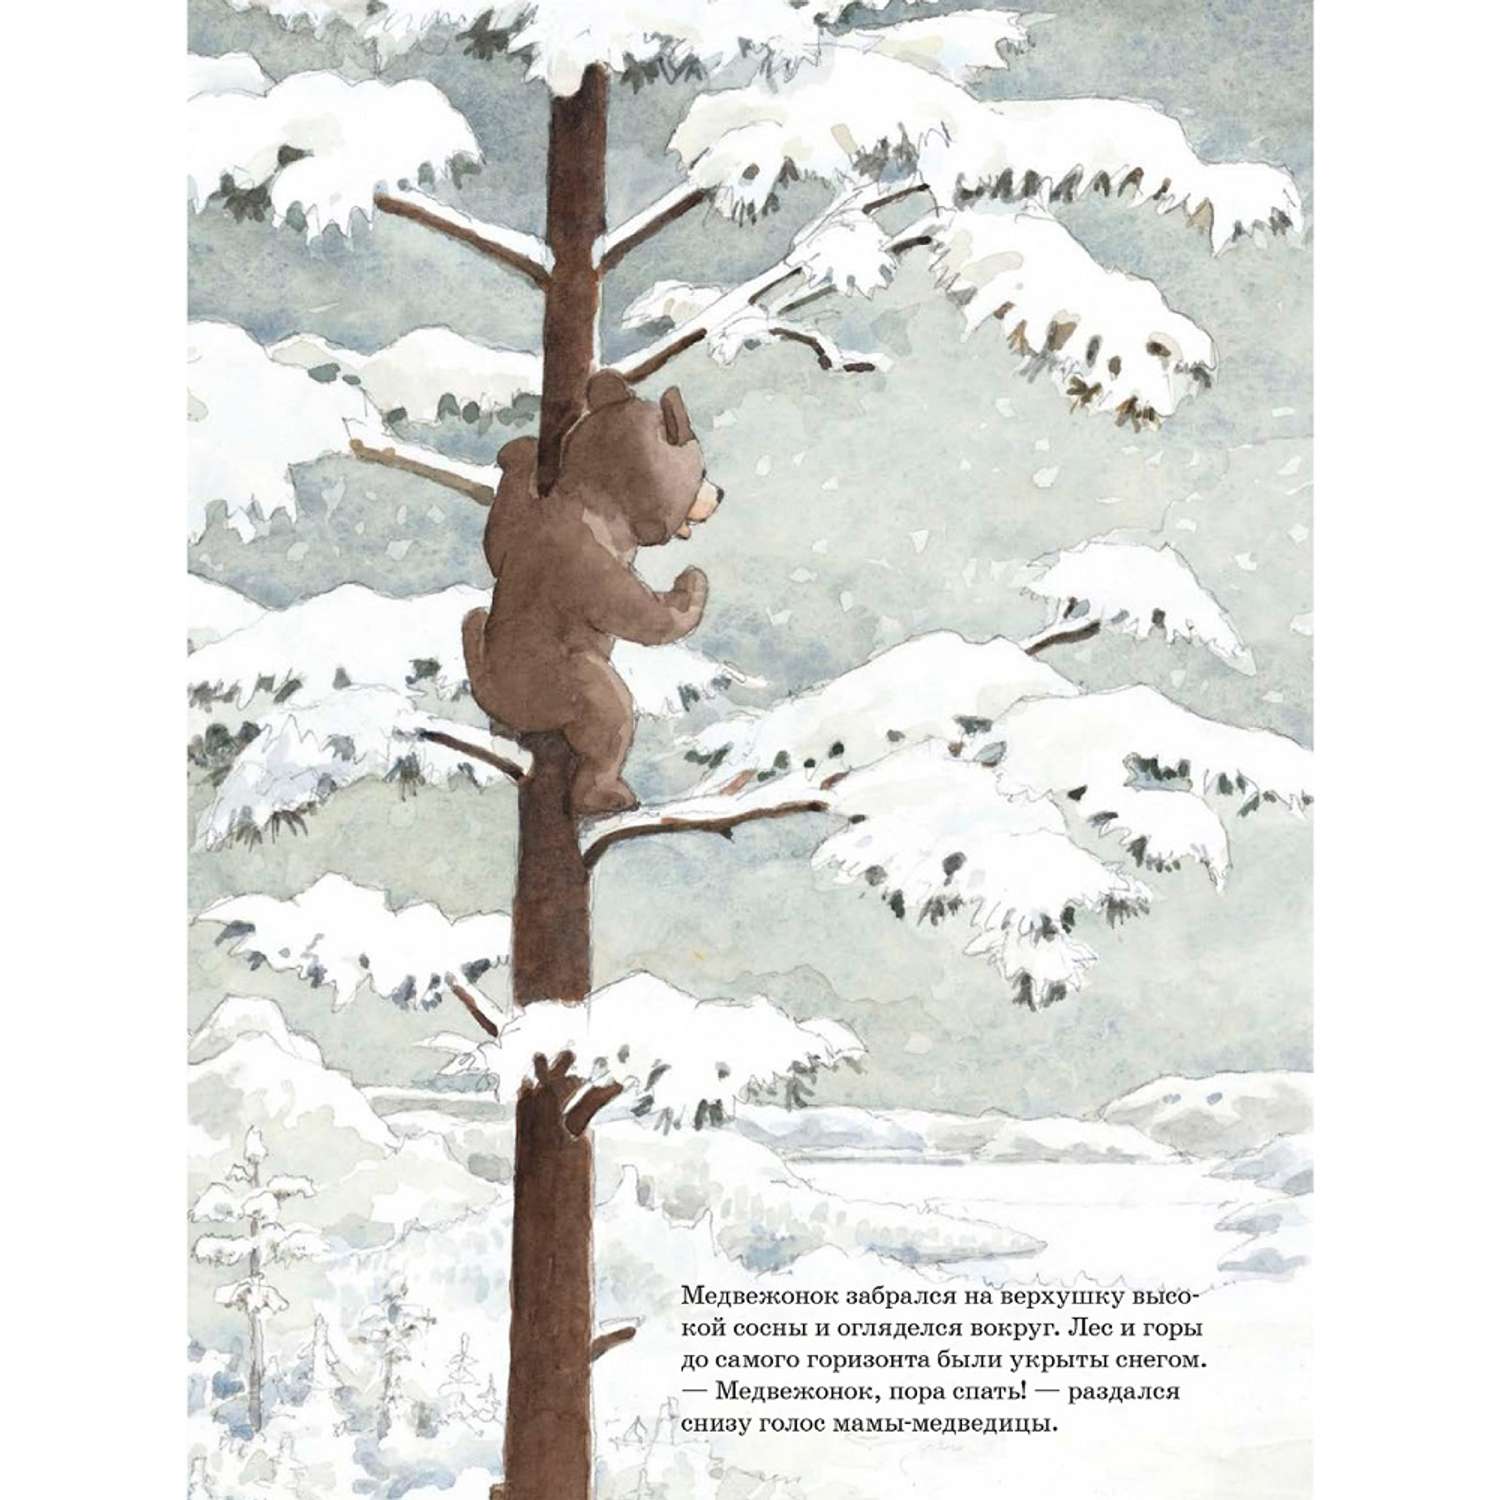 Книга Добрая книга Ложись спать медвежонок! Иллюстрации Яна Могенсена - фото 8